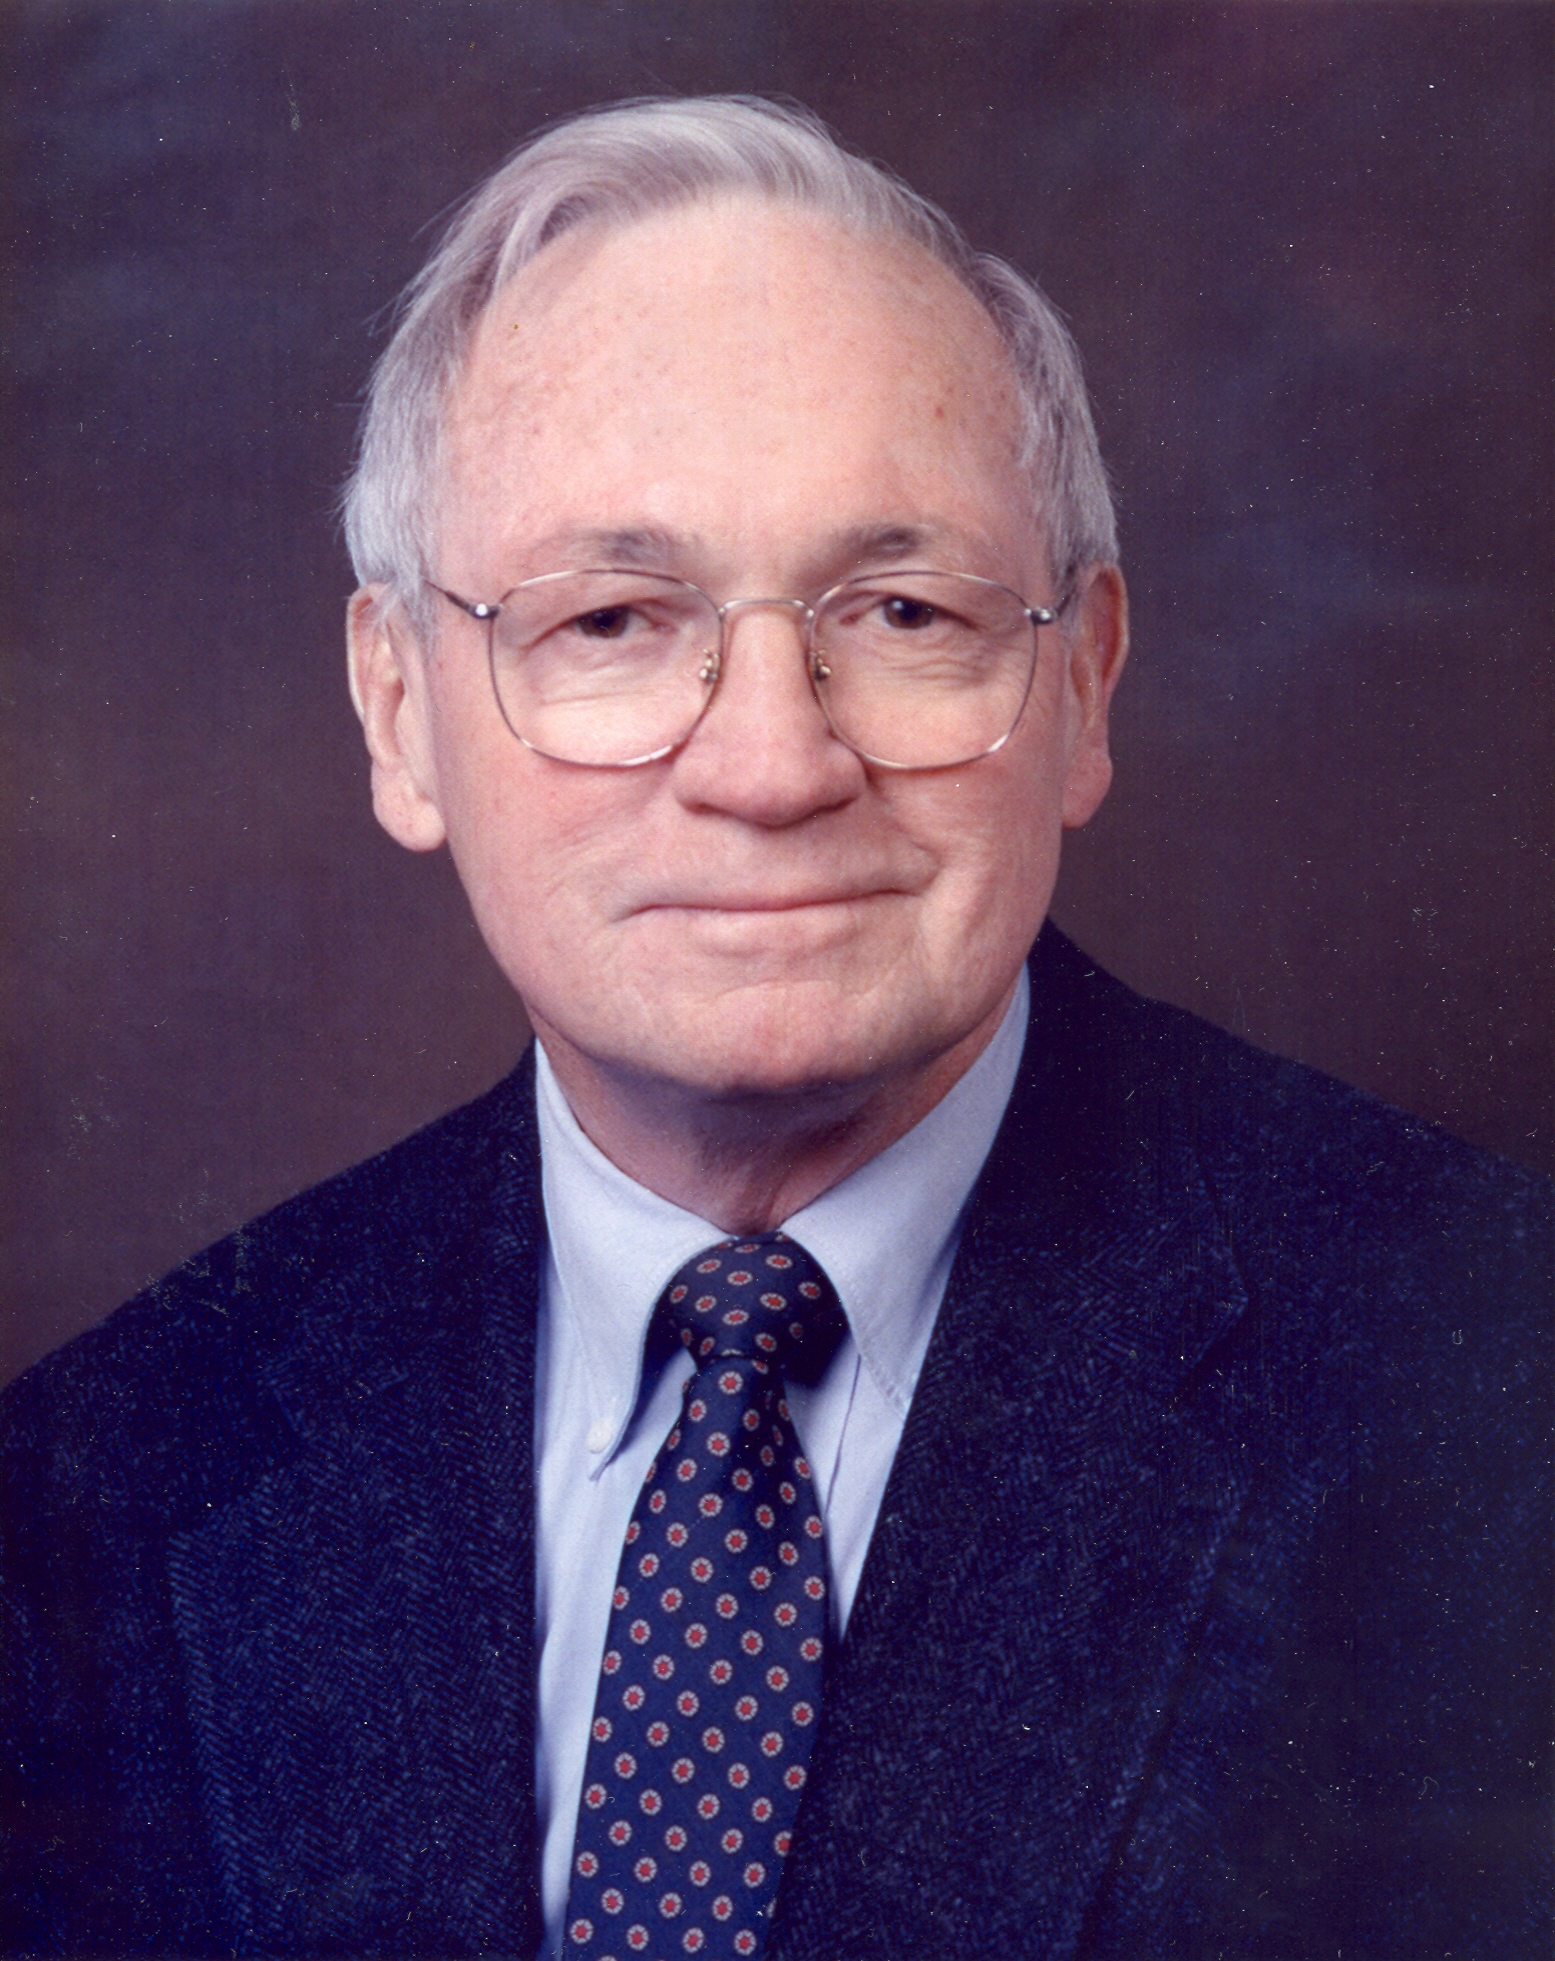 1983- Dr. Benton Steps Down as Chairman